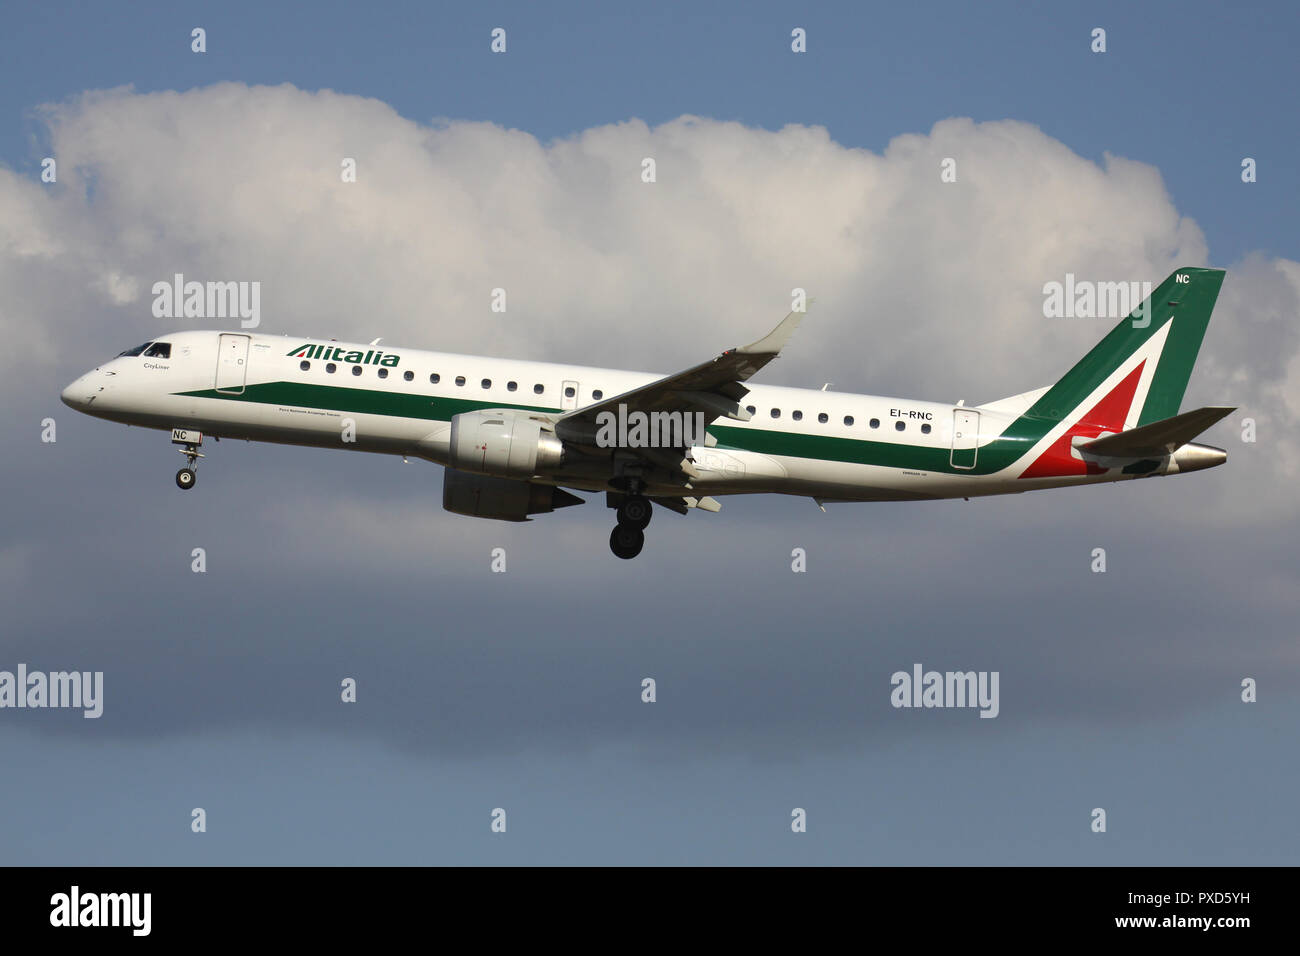 L'italien Alitalia Embraer ERJ-190 avec enregistrement irlandais EI-RNC en courte finale pour la piste 01 de l'aéroport de Bruxelles. Banque D'Images